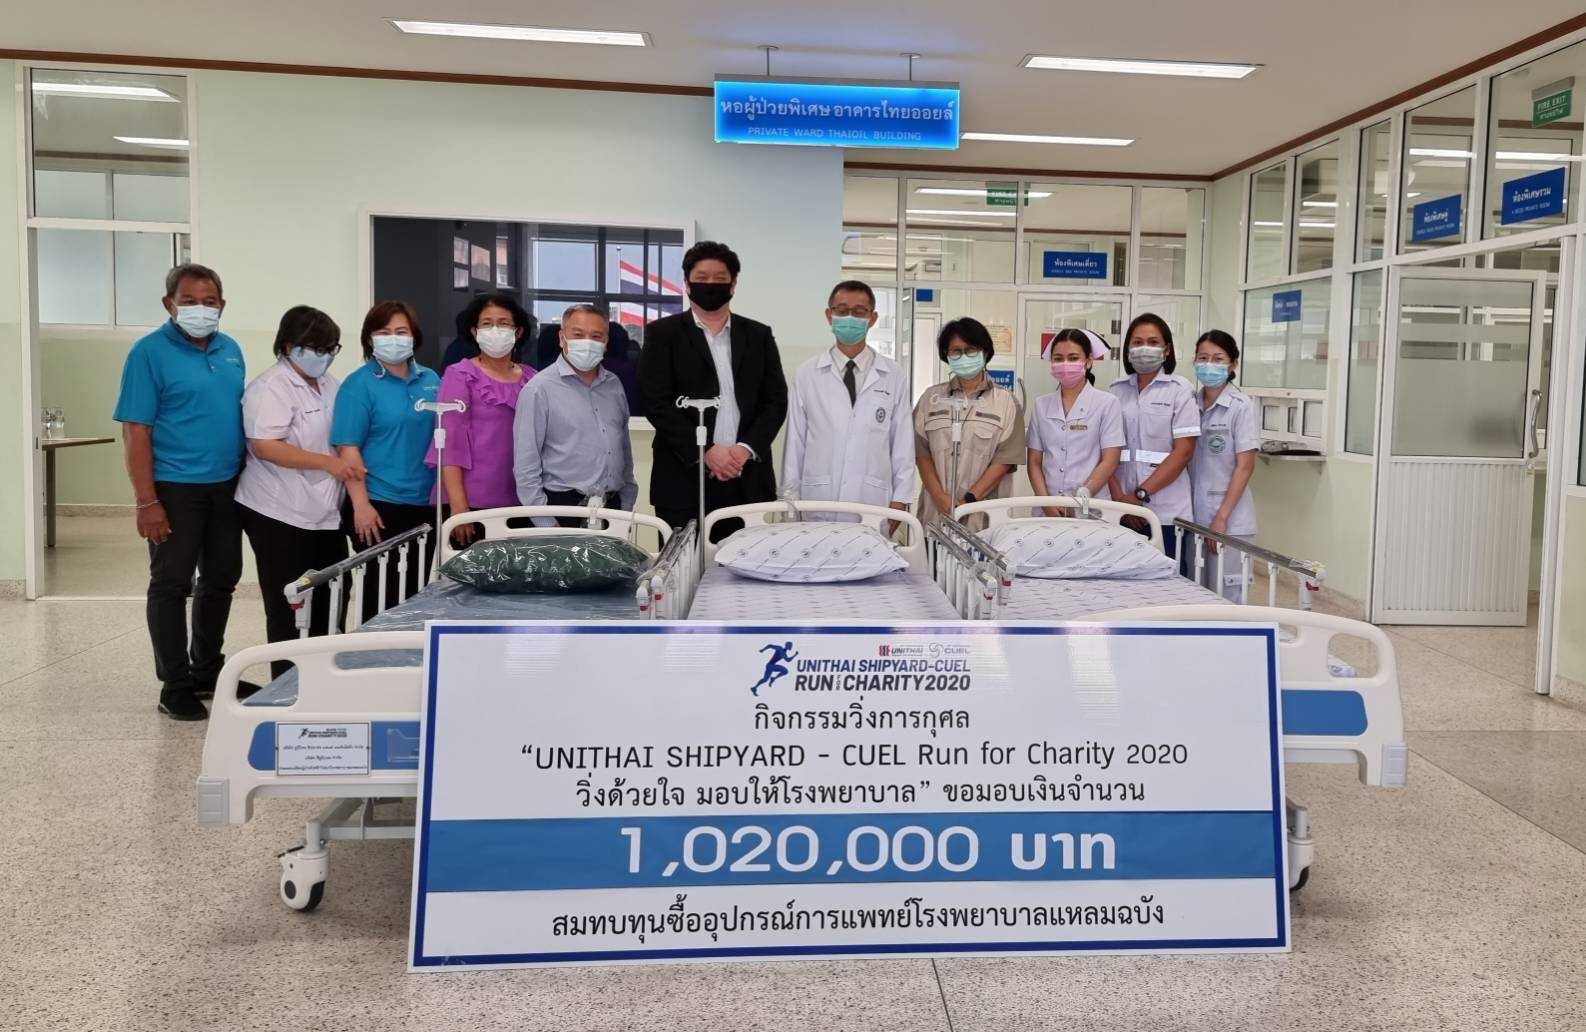 บริษัท ยูนิไทยชิปยาร์ดฯ และบริษัท ซียูอีแอล ส่งมอบเตียงผู้ป่วยไฟฟ้าให้กับโรงพยาบาลแหลมฉบัง จำนวน 30 เตียง เพื่อใช้เป็นสาธารณะประโยชน์